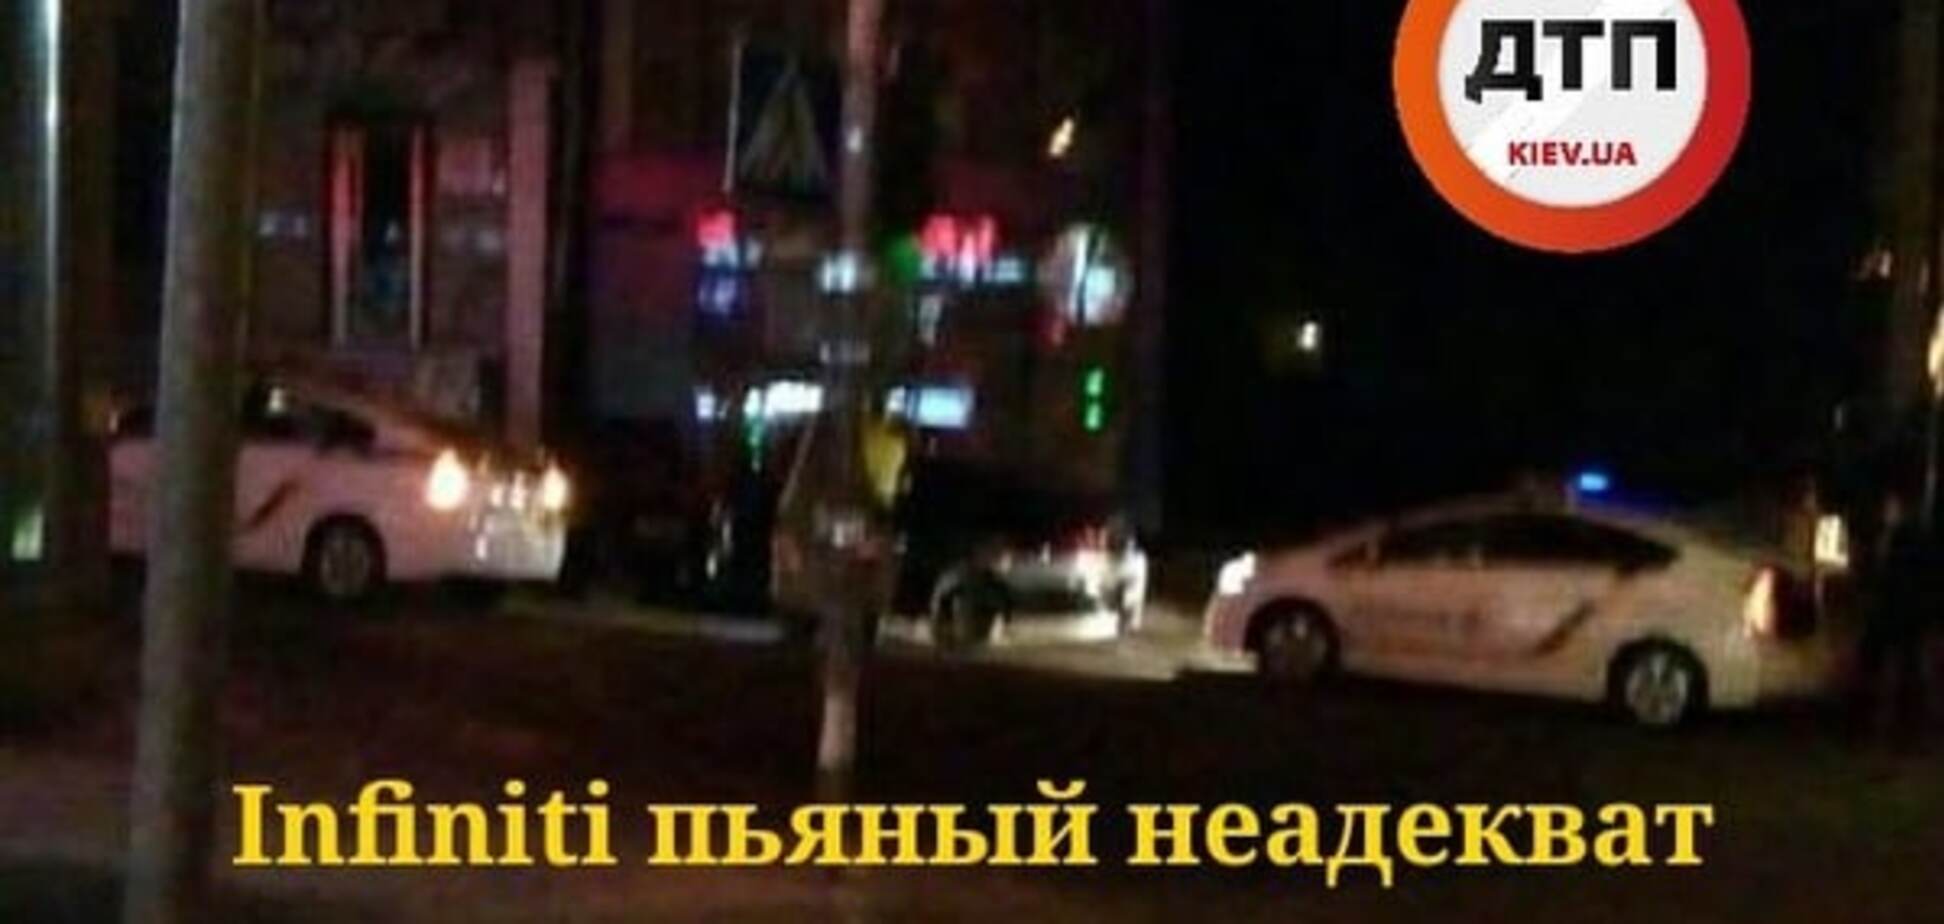 В Киеве пьяная компания на Infiniti пыталась обмануть копов